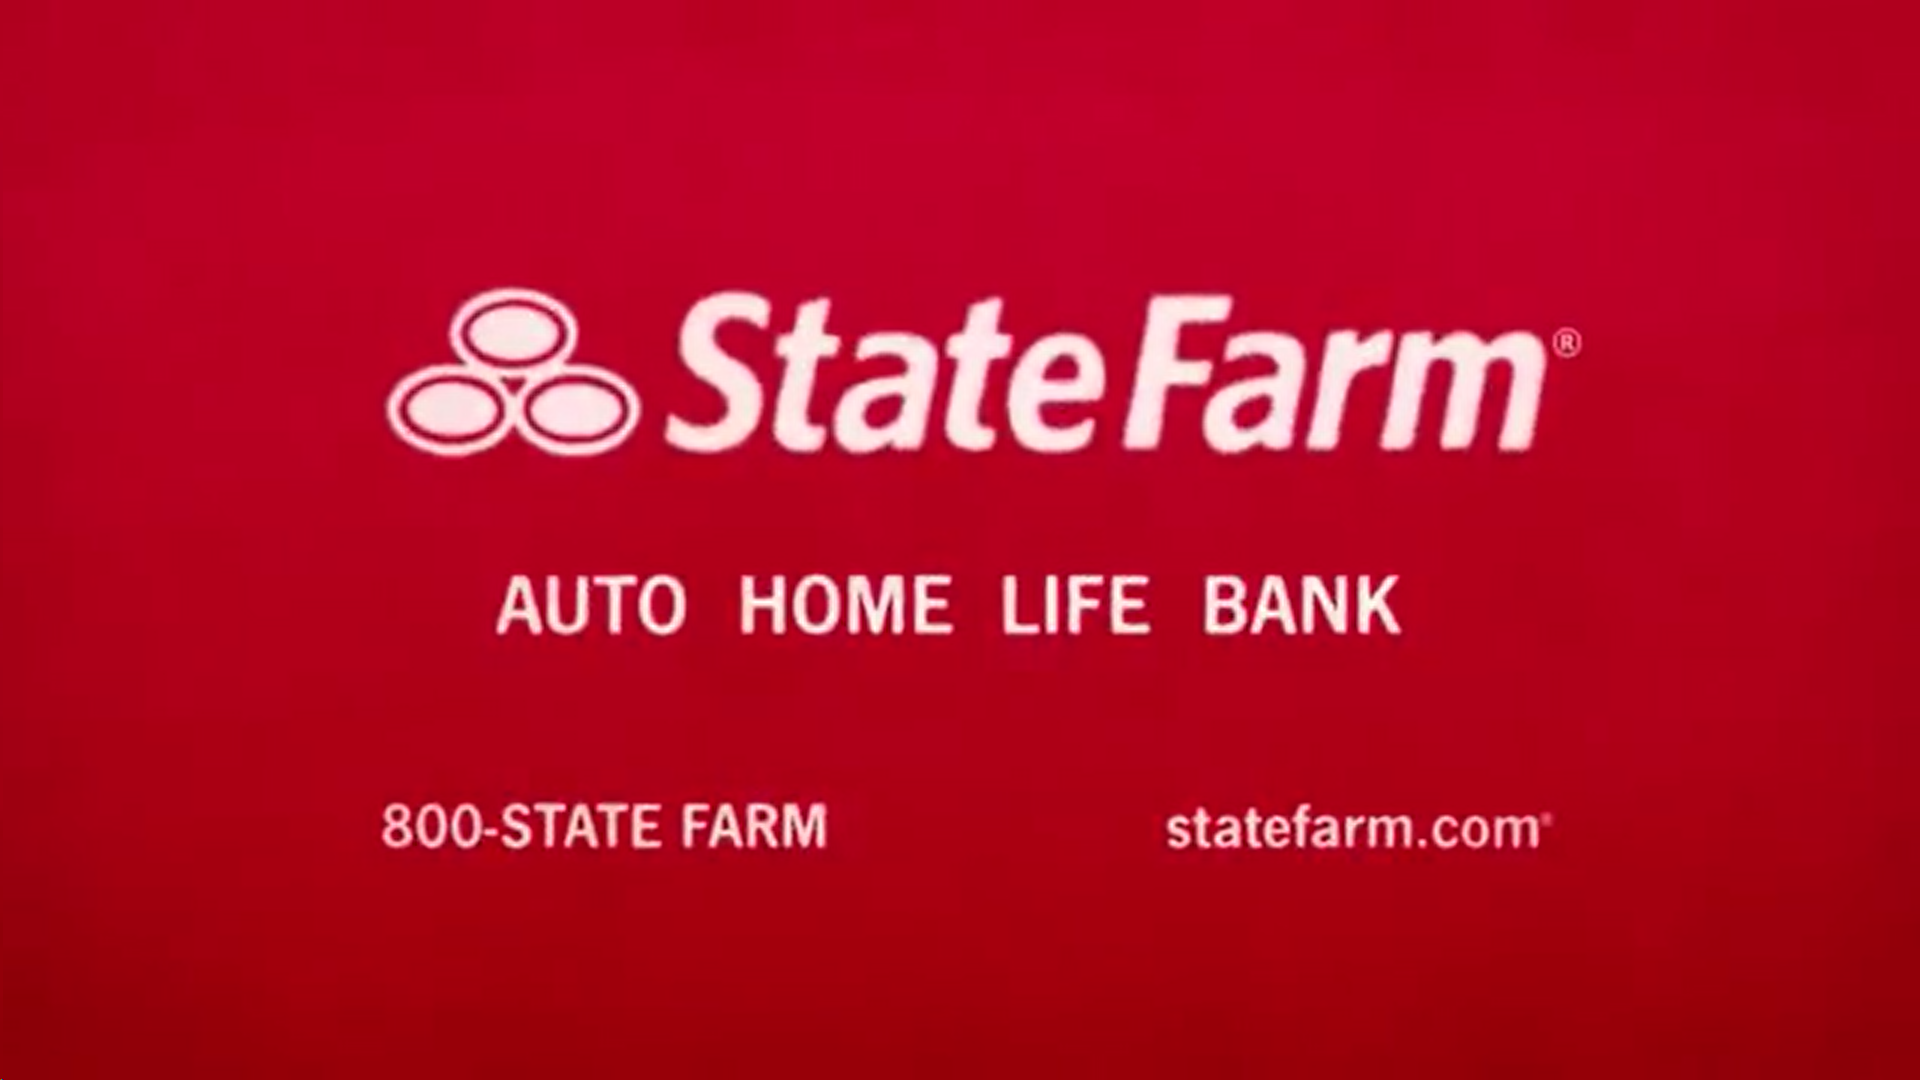 State Farm (insurance company), Scoobypedia